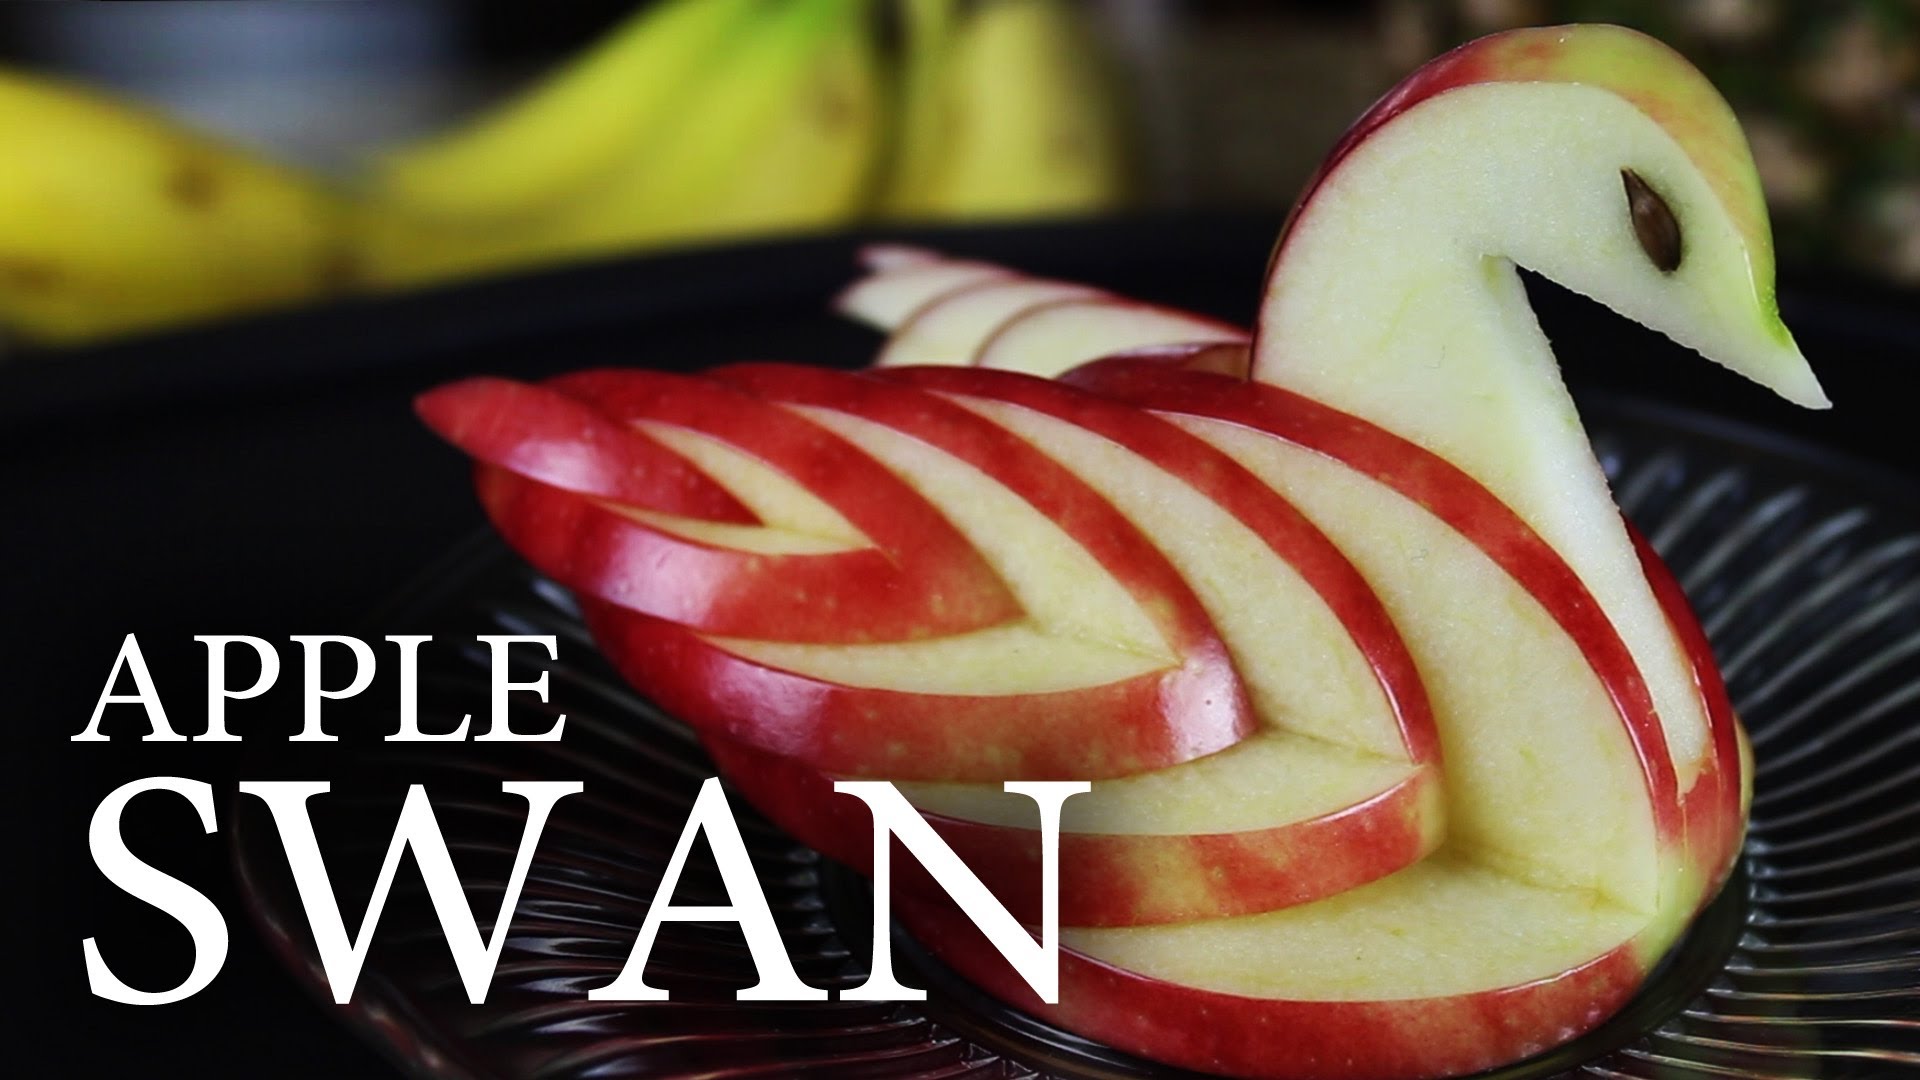  بالفيديو: كيف تصنعين بجعة من التفاح لتزيين المائدة؟